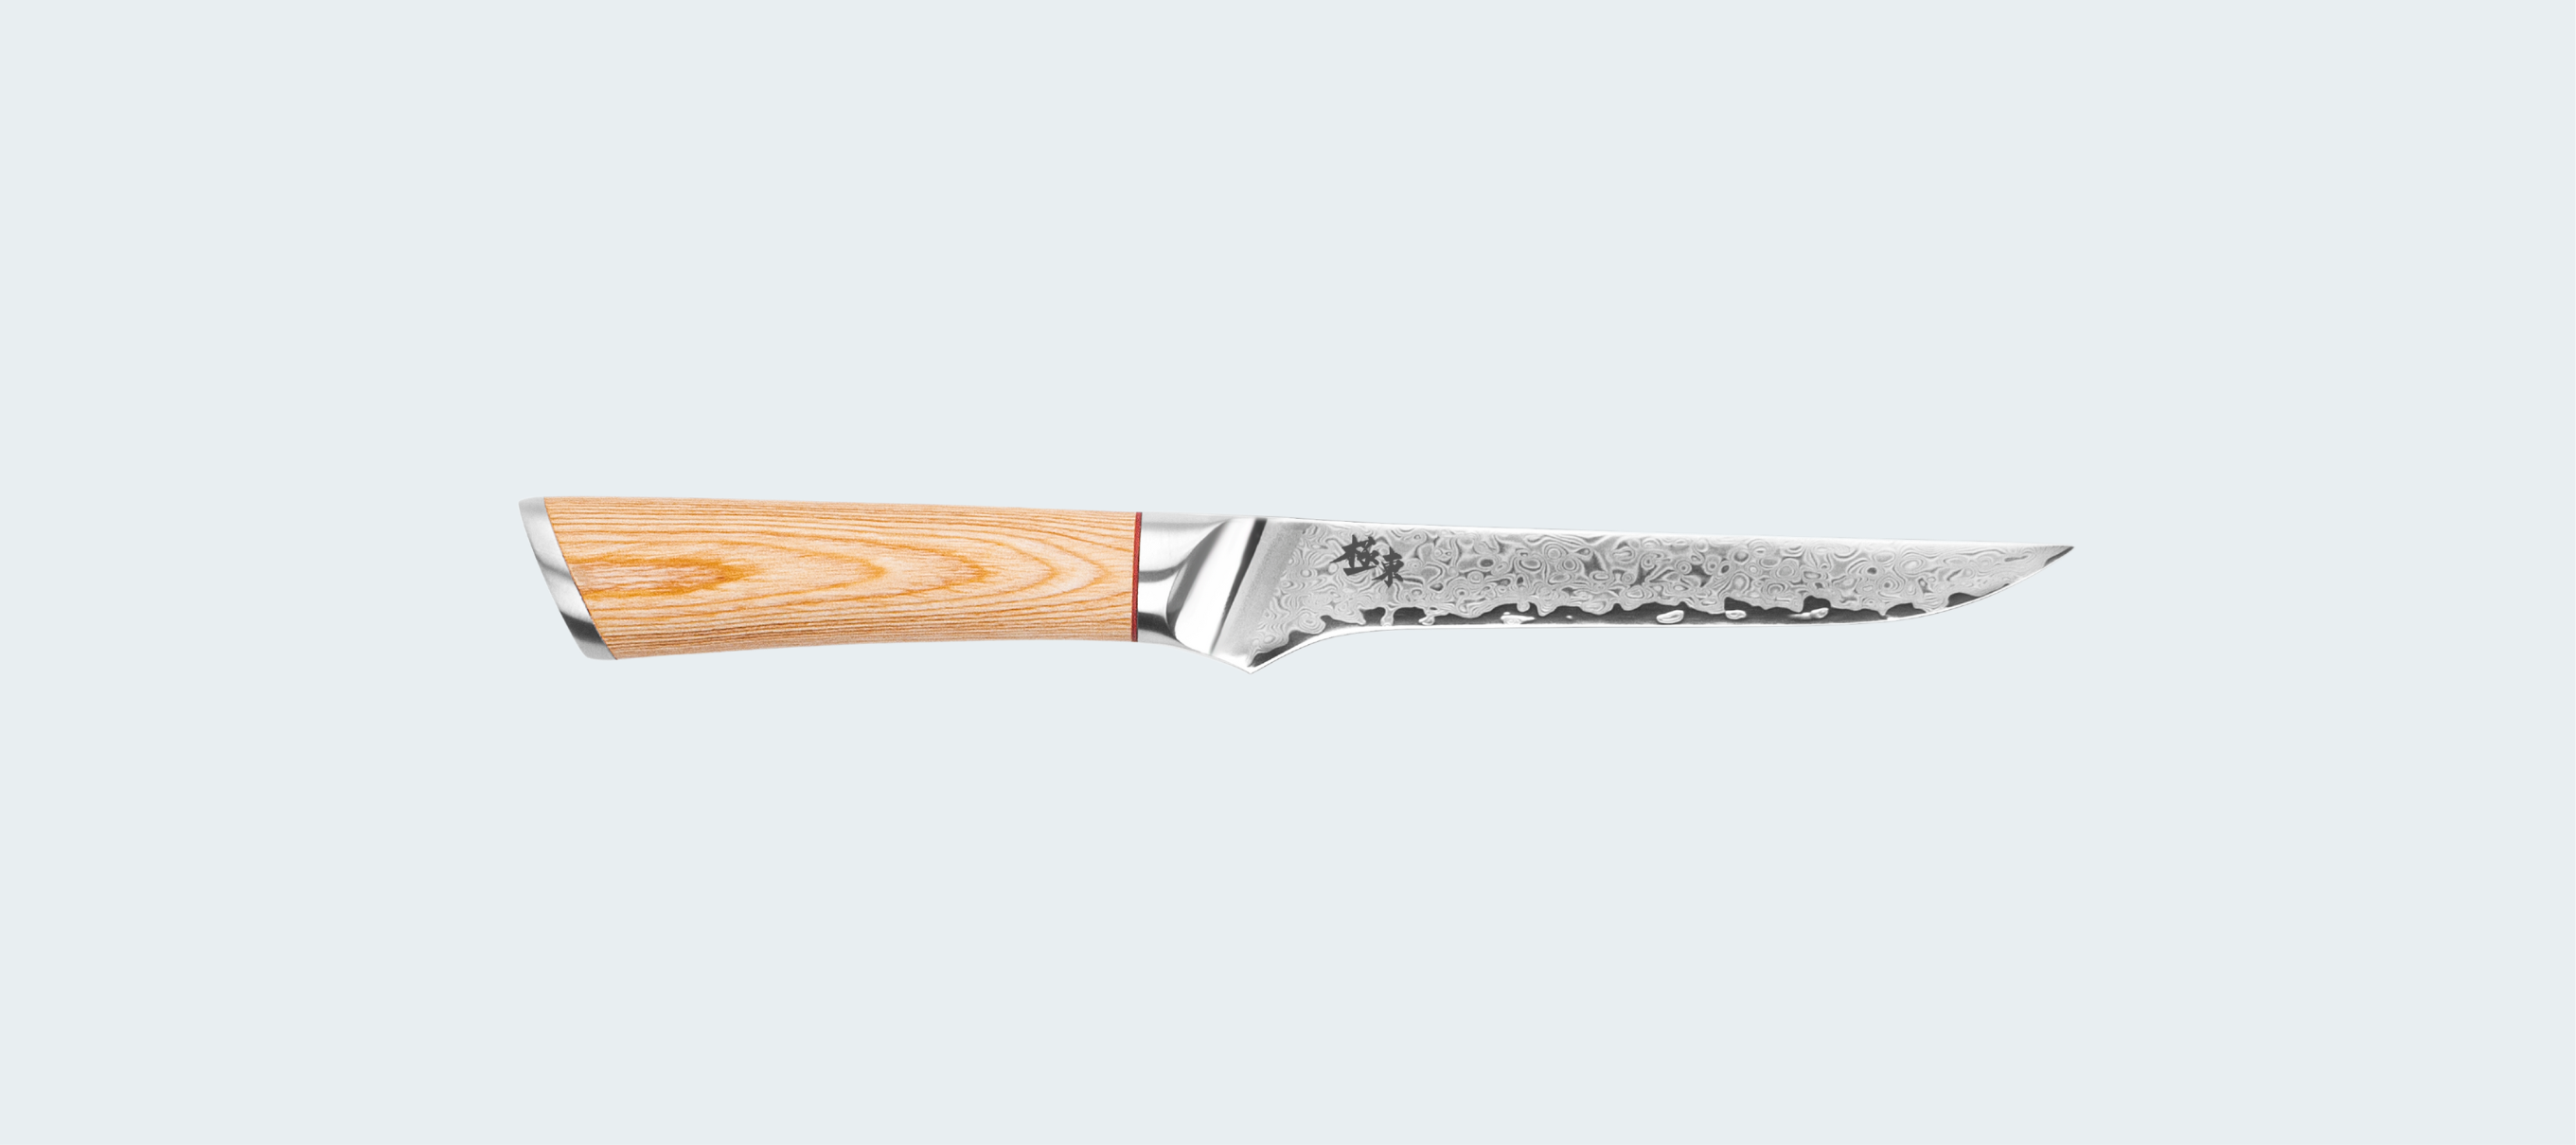 Cuchillo de Chef de cocina de acero de Damasco, cuchillo japonés  profesional para carne, pescado, rebanado